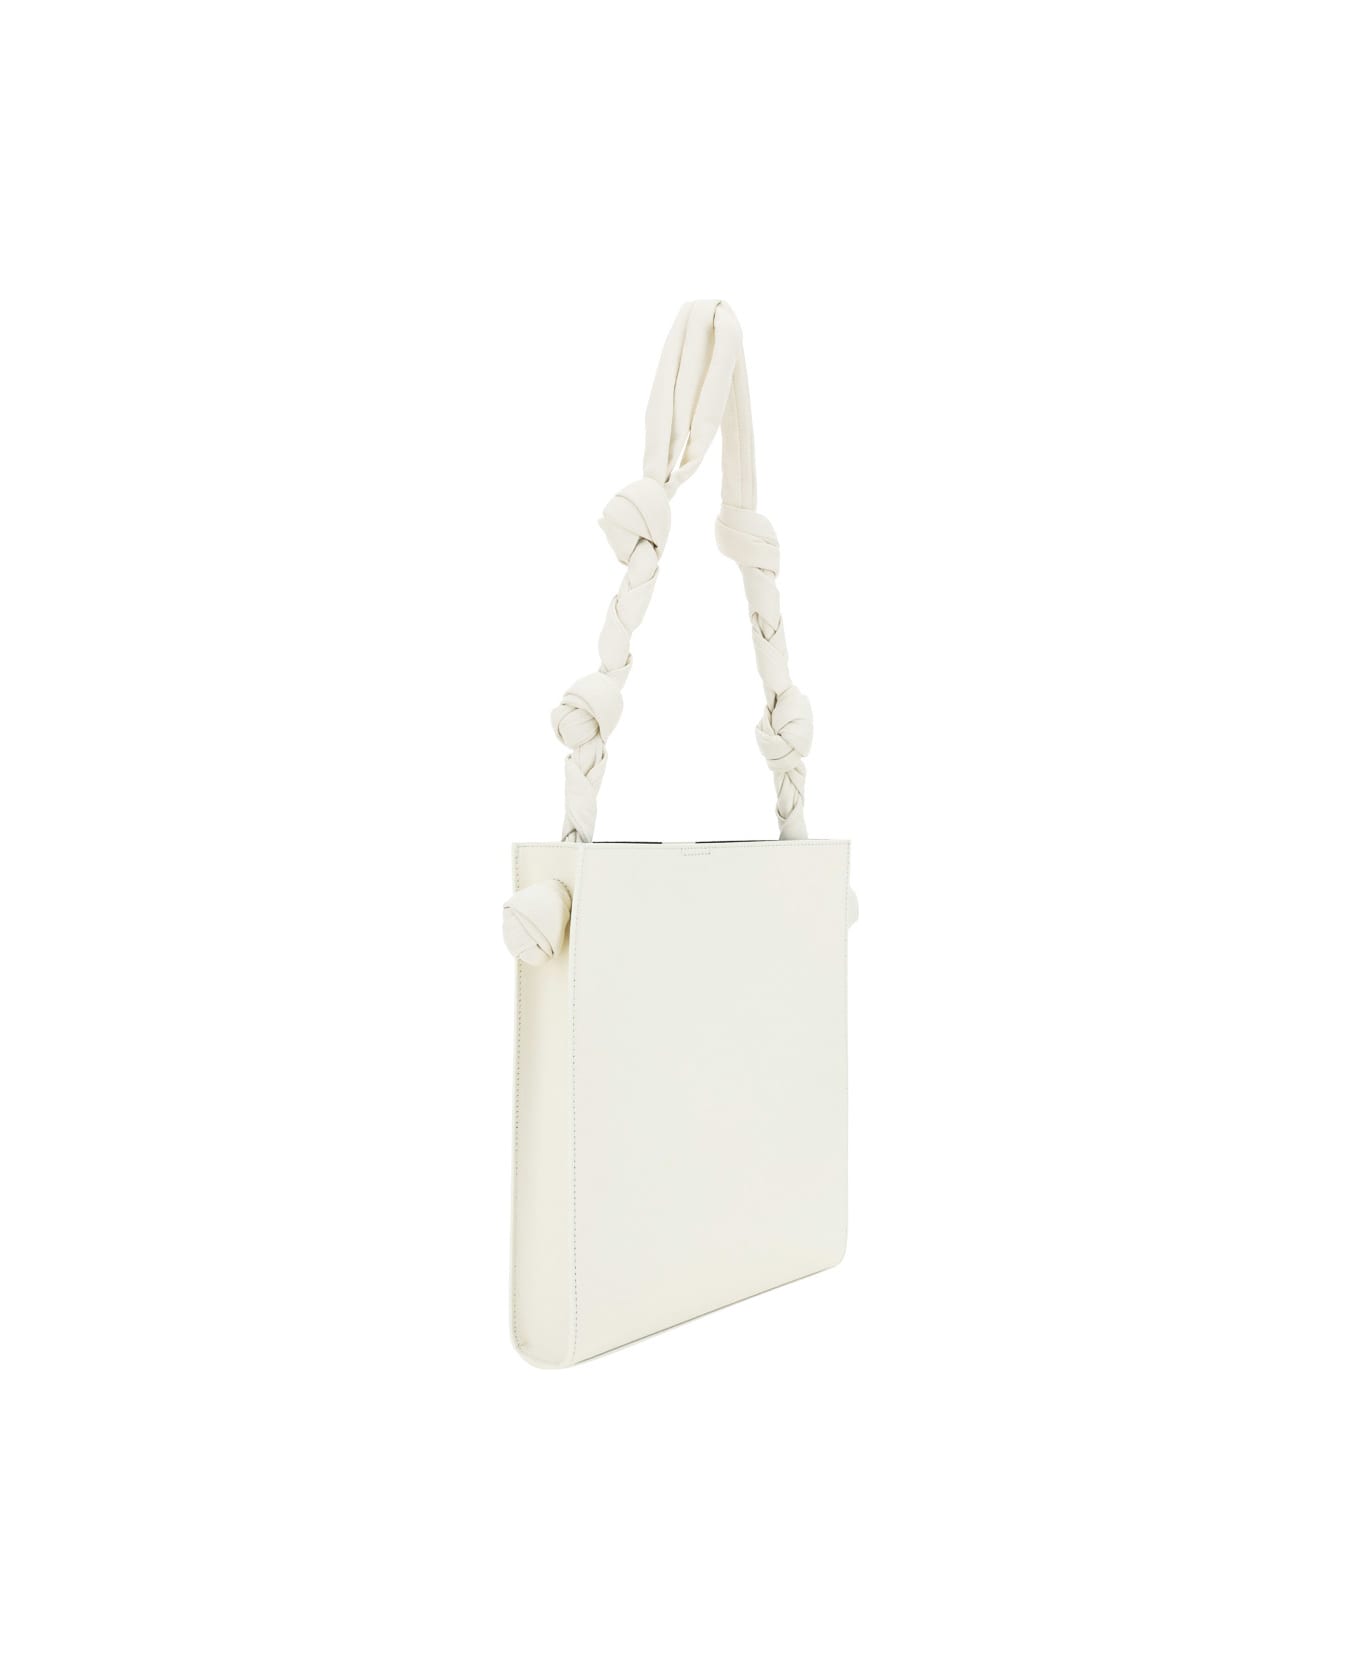 Jil Sander Natural Medium Tangle Shoulder Bag - Bianco トートバッグ